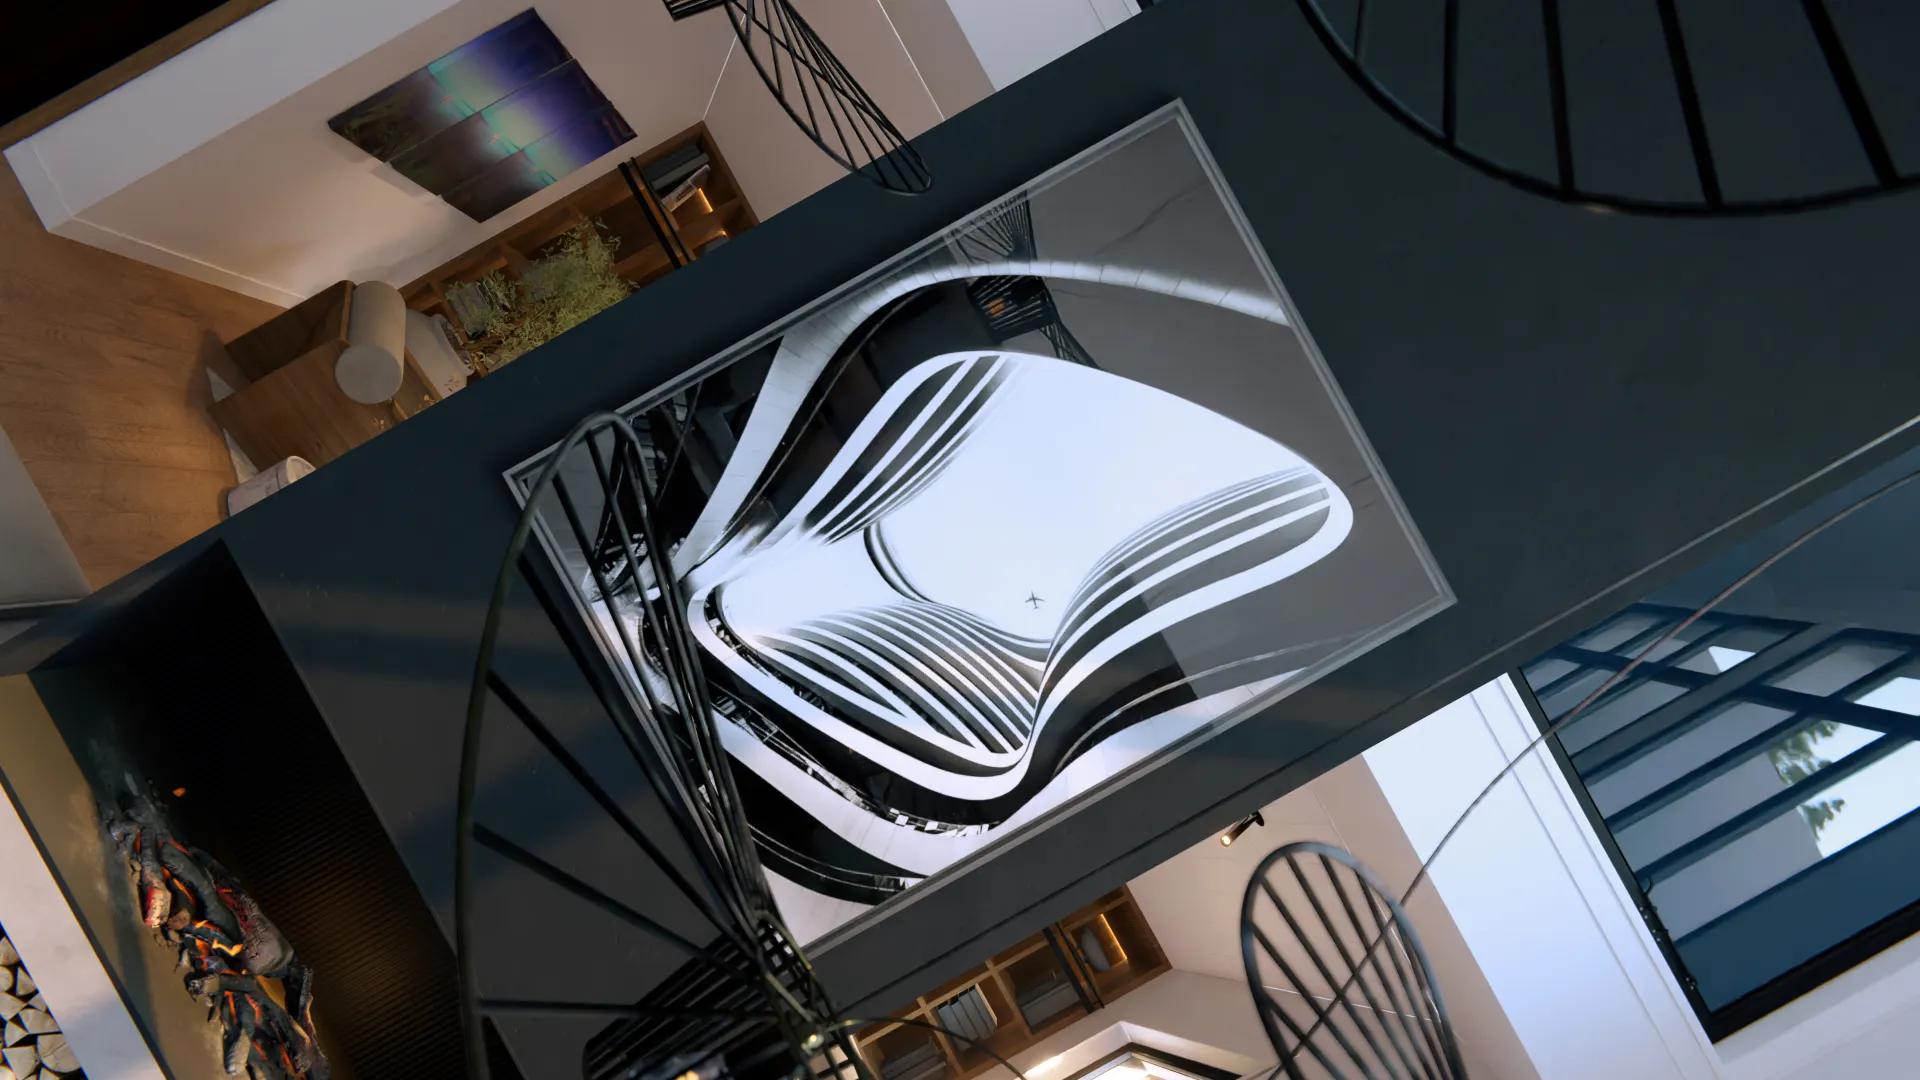 Architectes-images-3d-rendus-perspective-interieure-l4m-projet-harmonie-design-interieur-sculpture